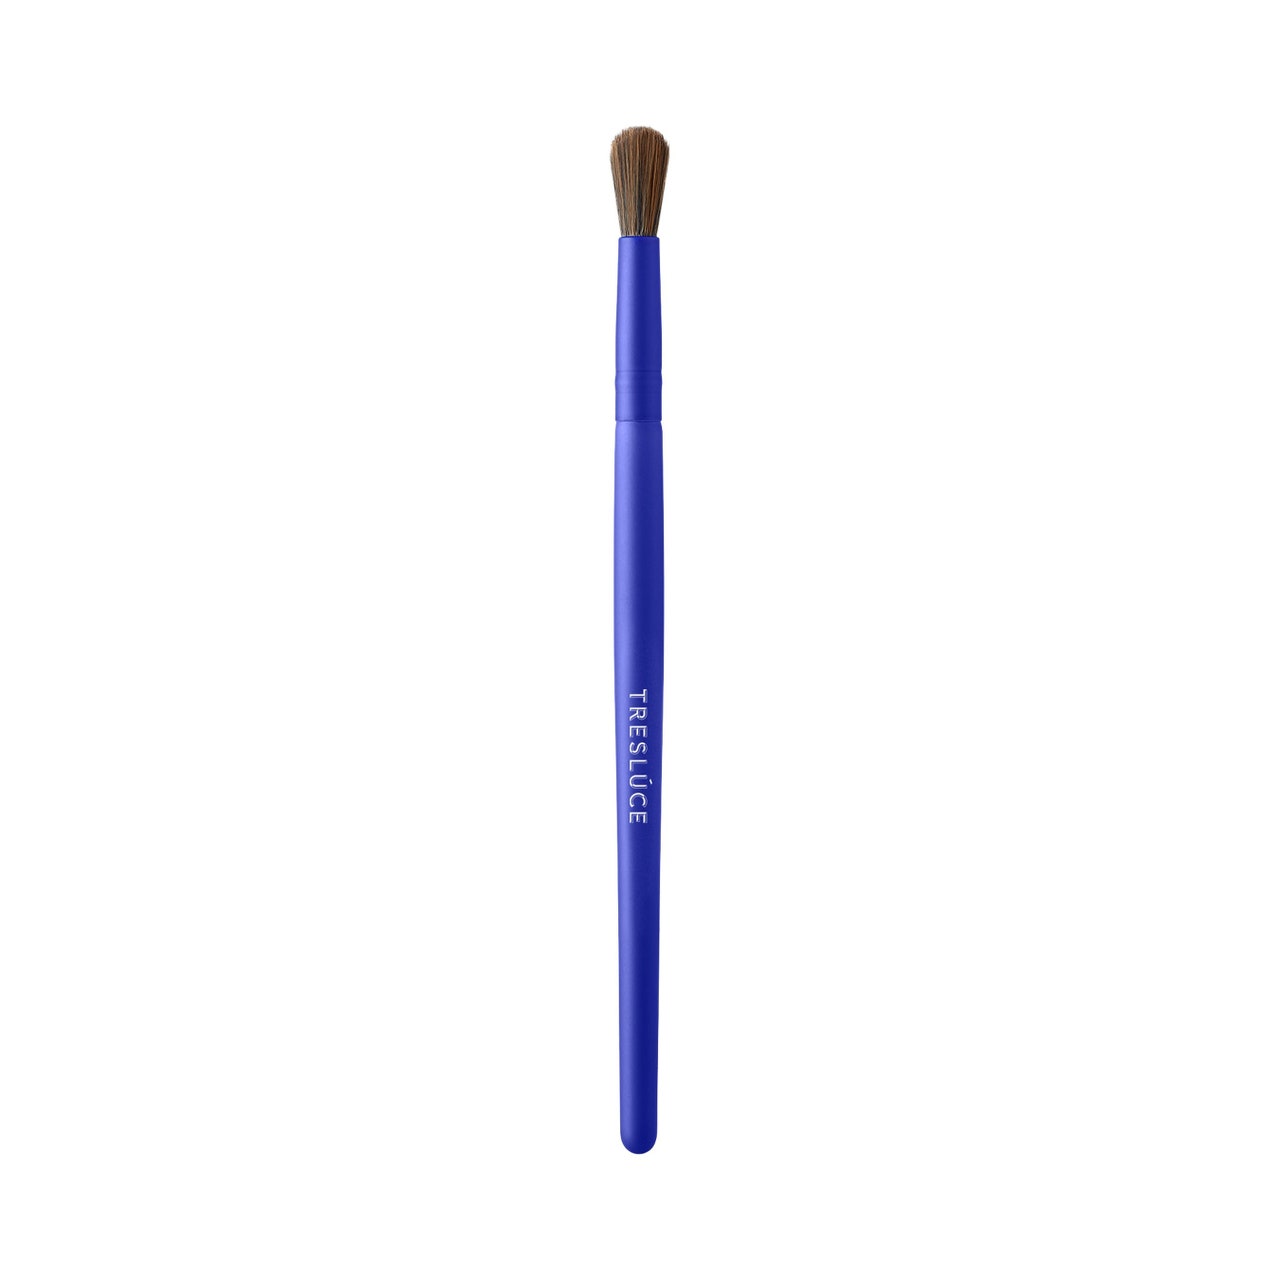 Treslúce Beauty B100 Deluxe Blending Brush, blauer Lidschatten-Mischpinsel mit braunen Borsten auf weißem Hintergrund